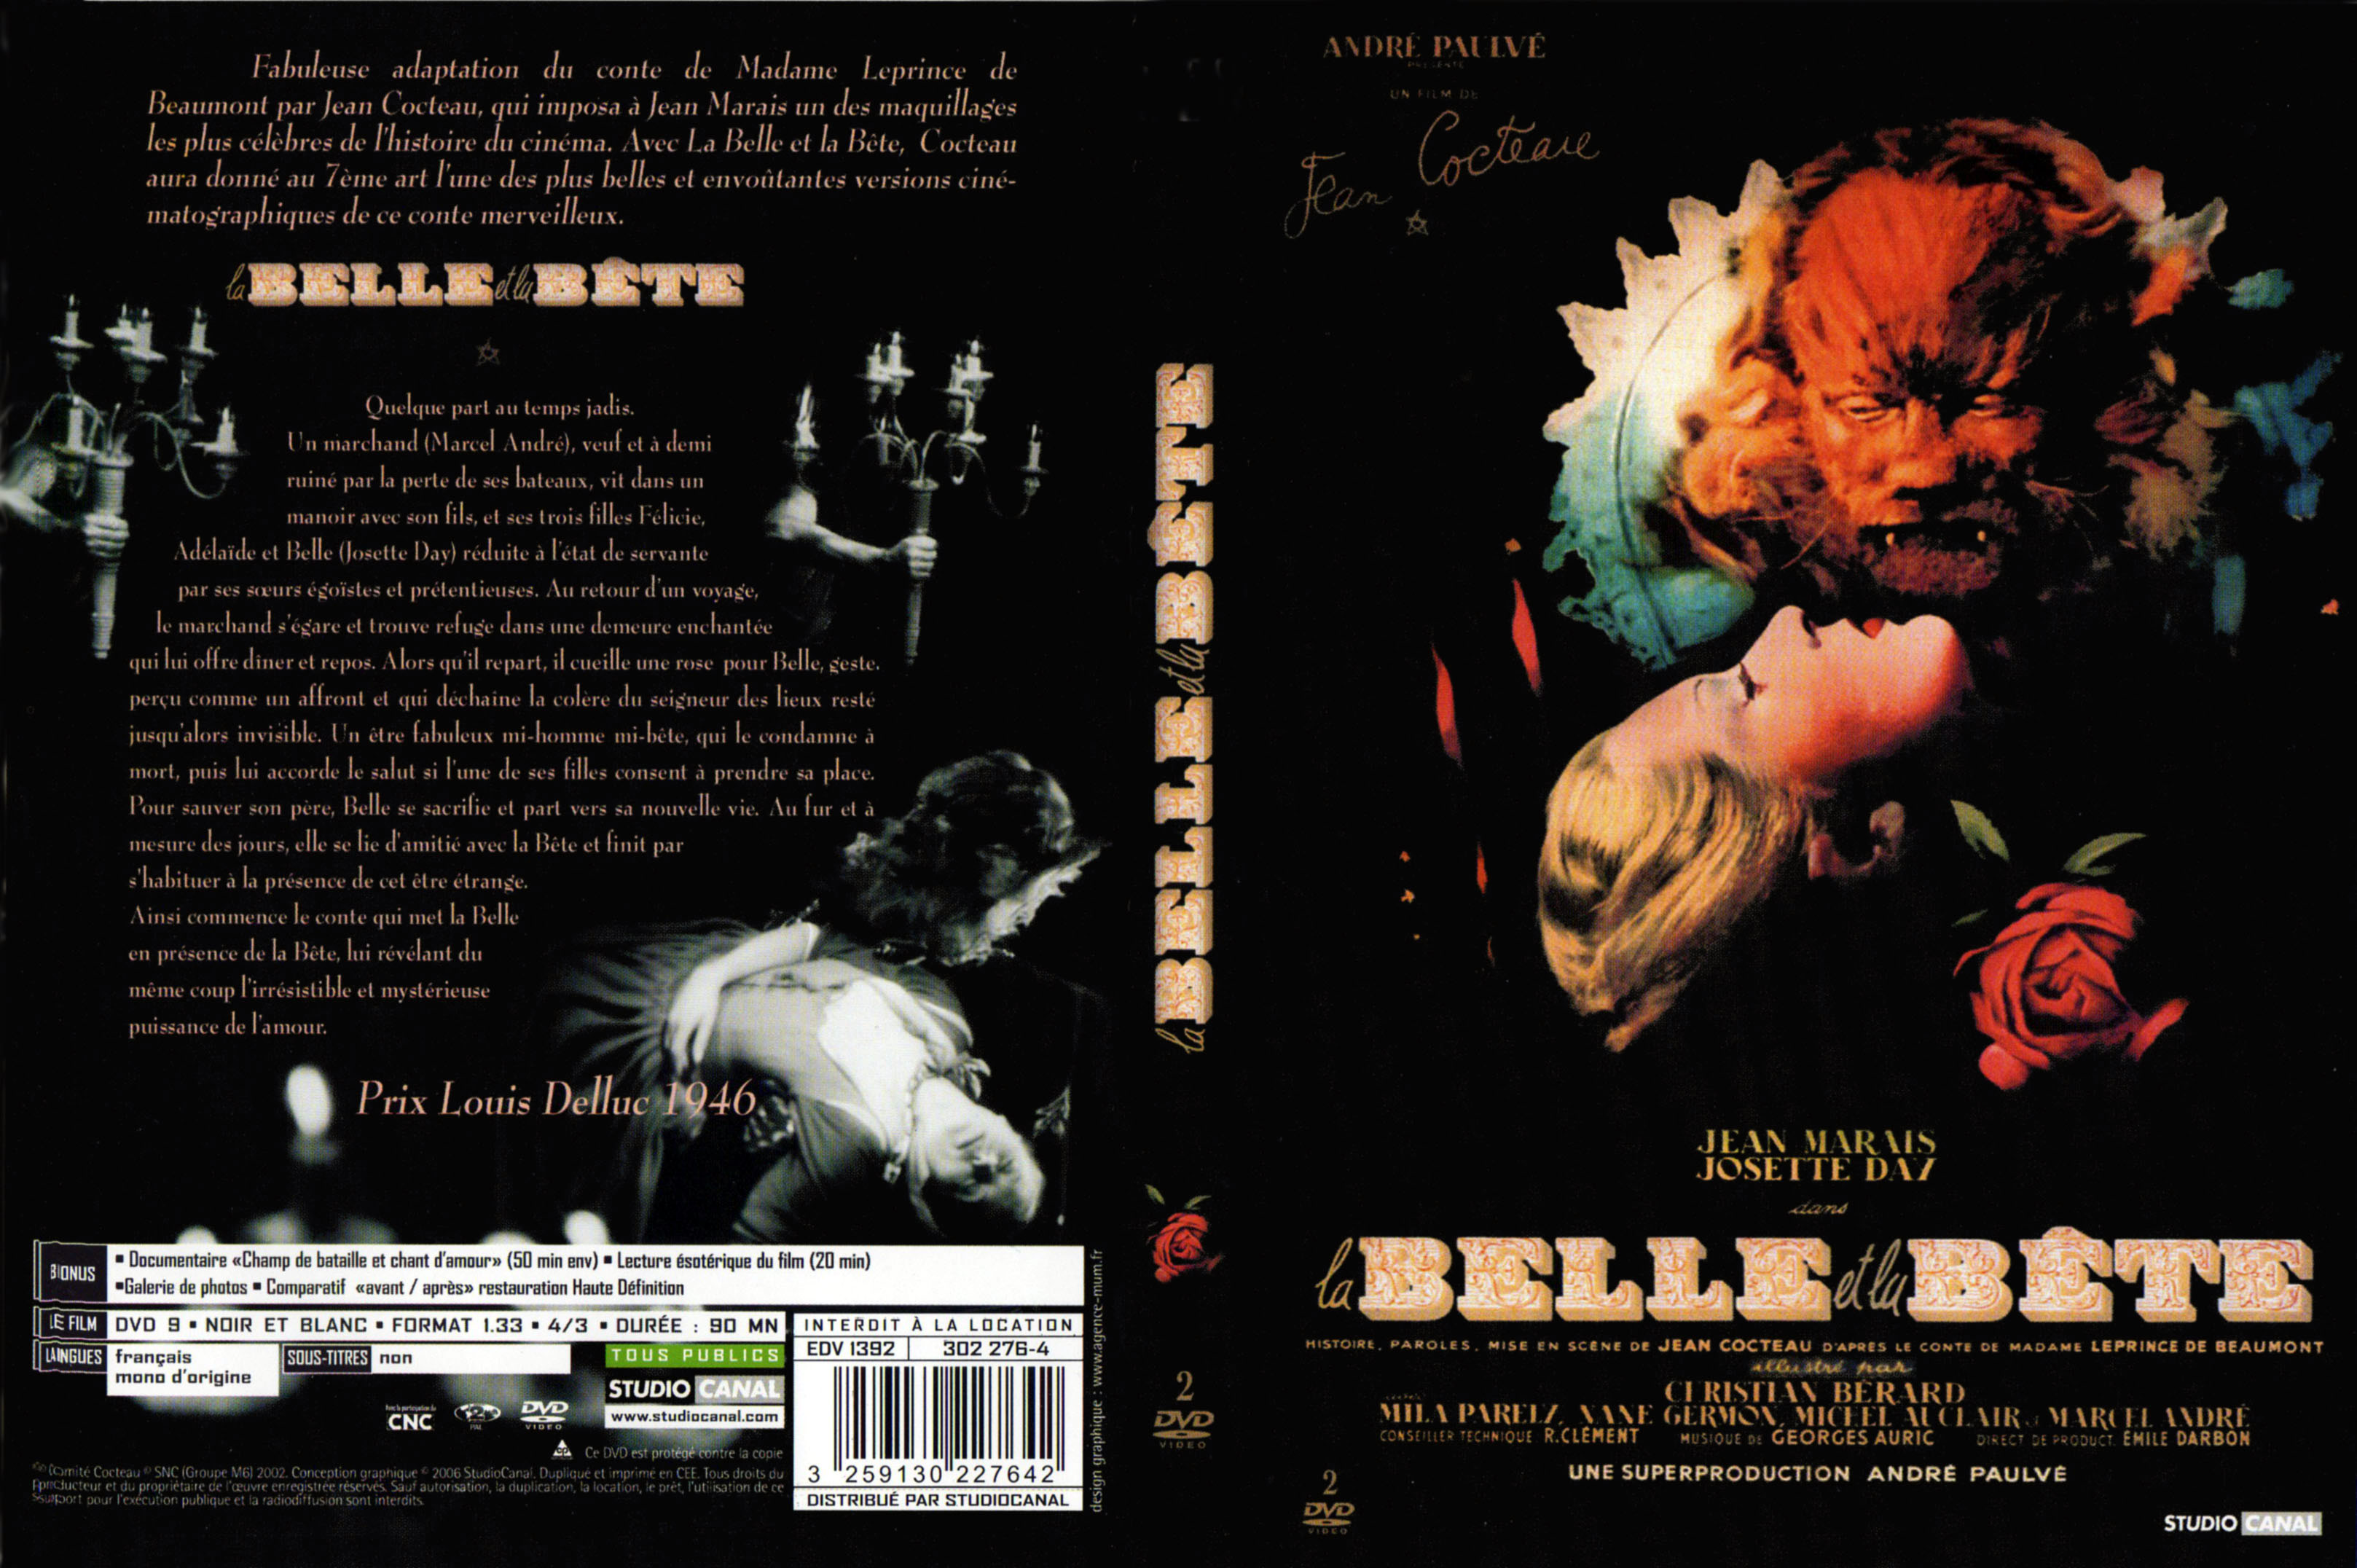 Jaquette DVD La belle et la bete Le Film v2